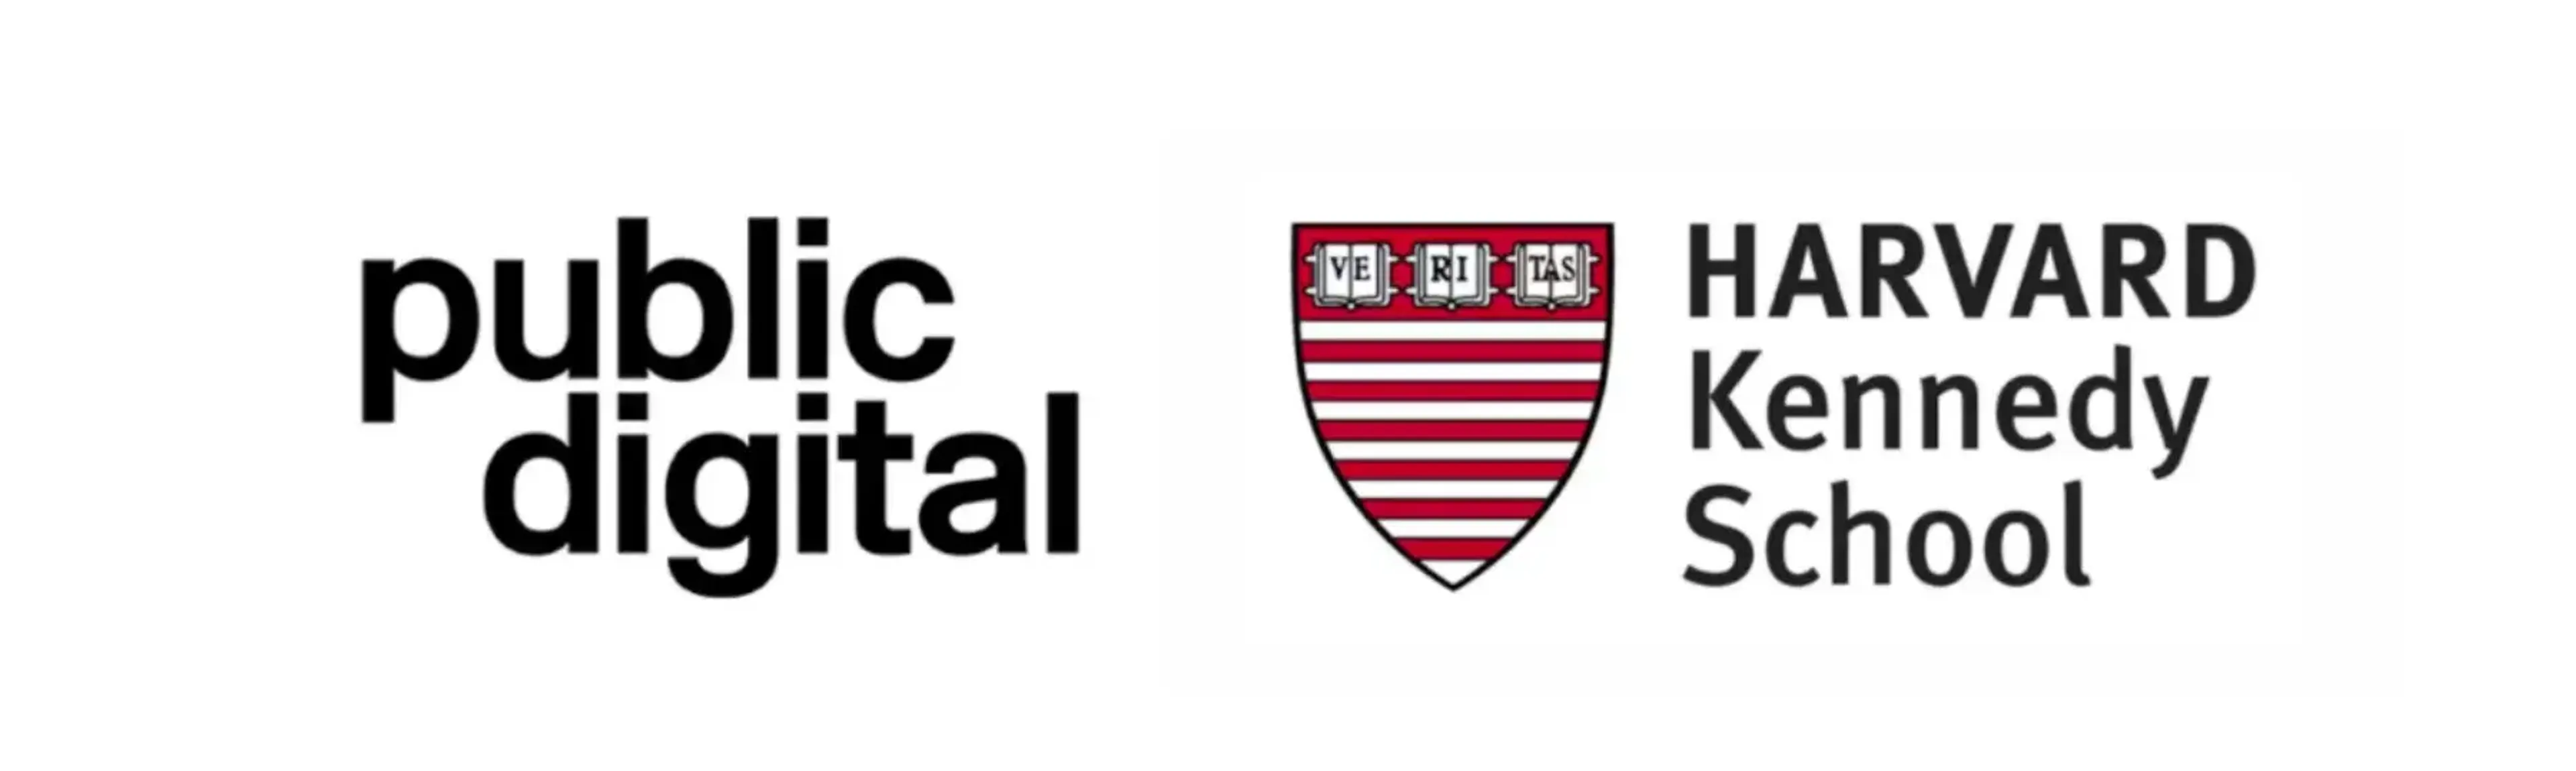 Public Digital and Harvard Kennedy School logos